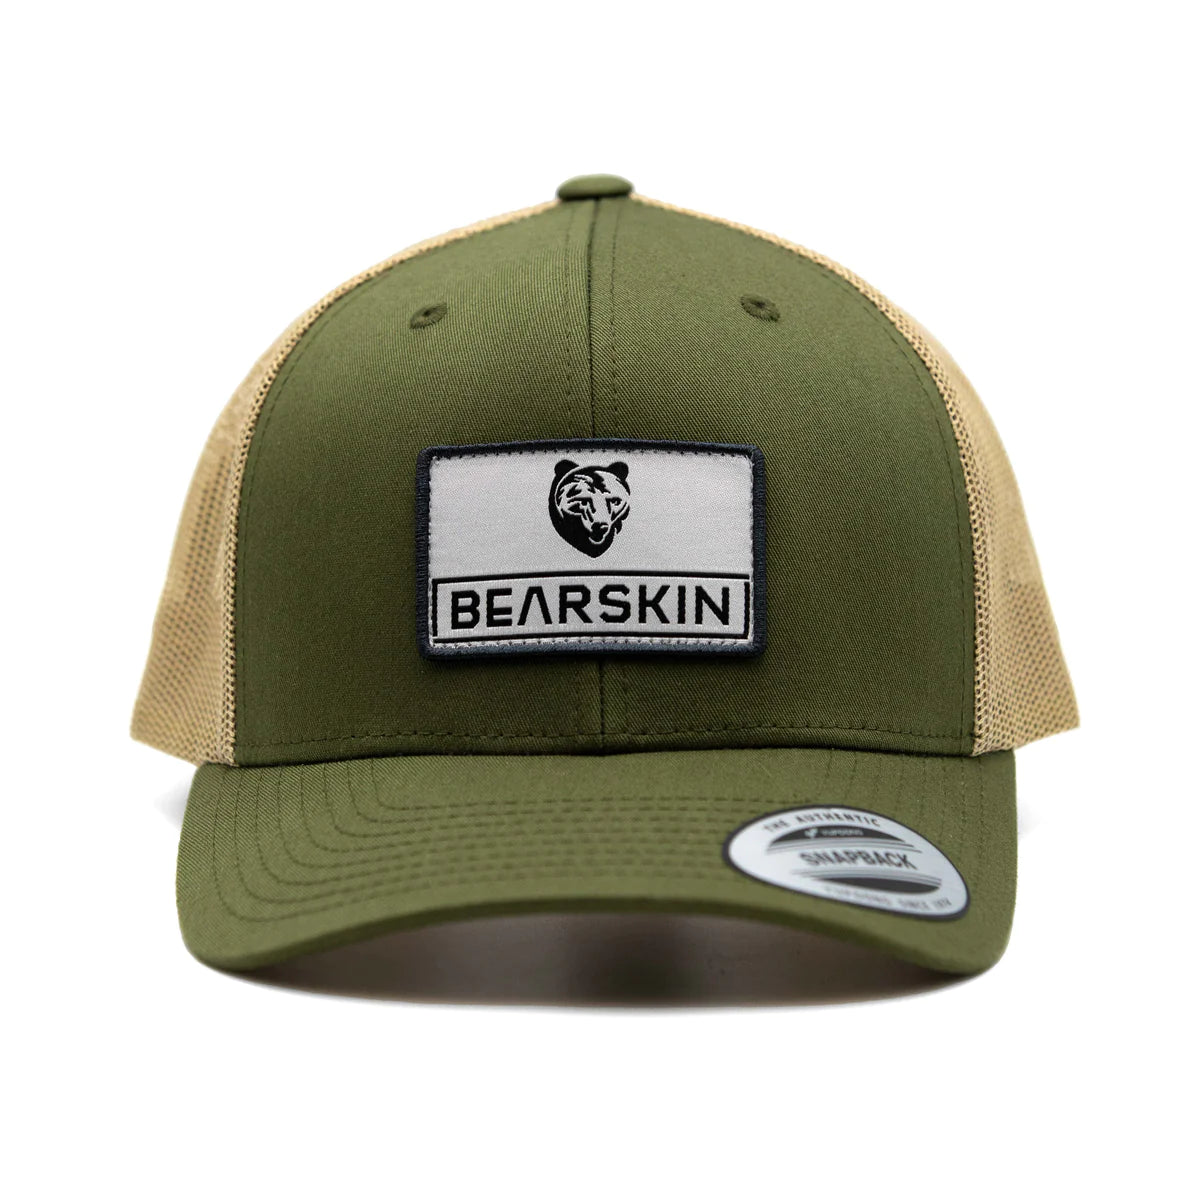 Bearskin Trucker caps